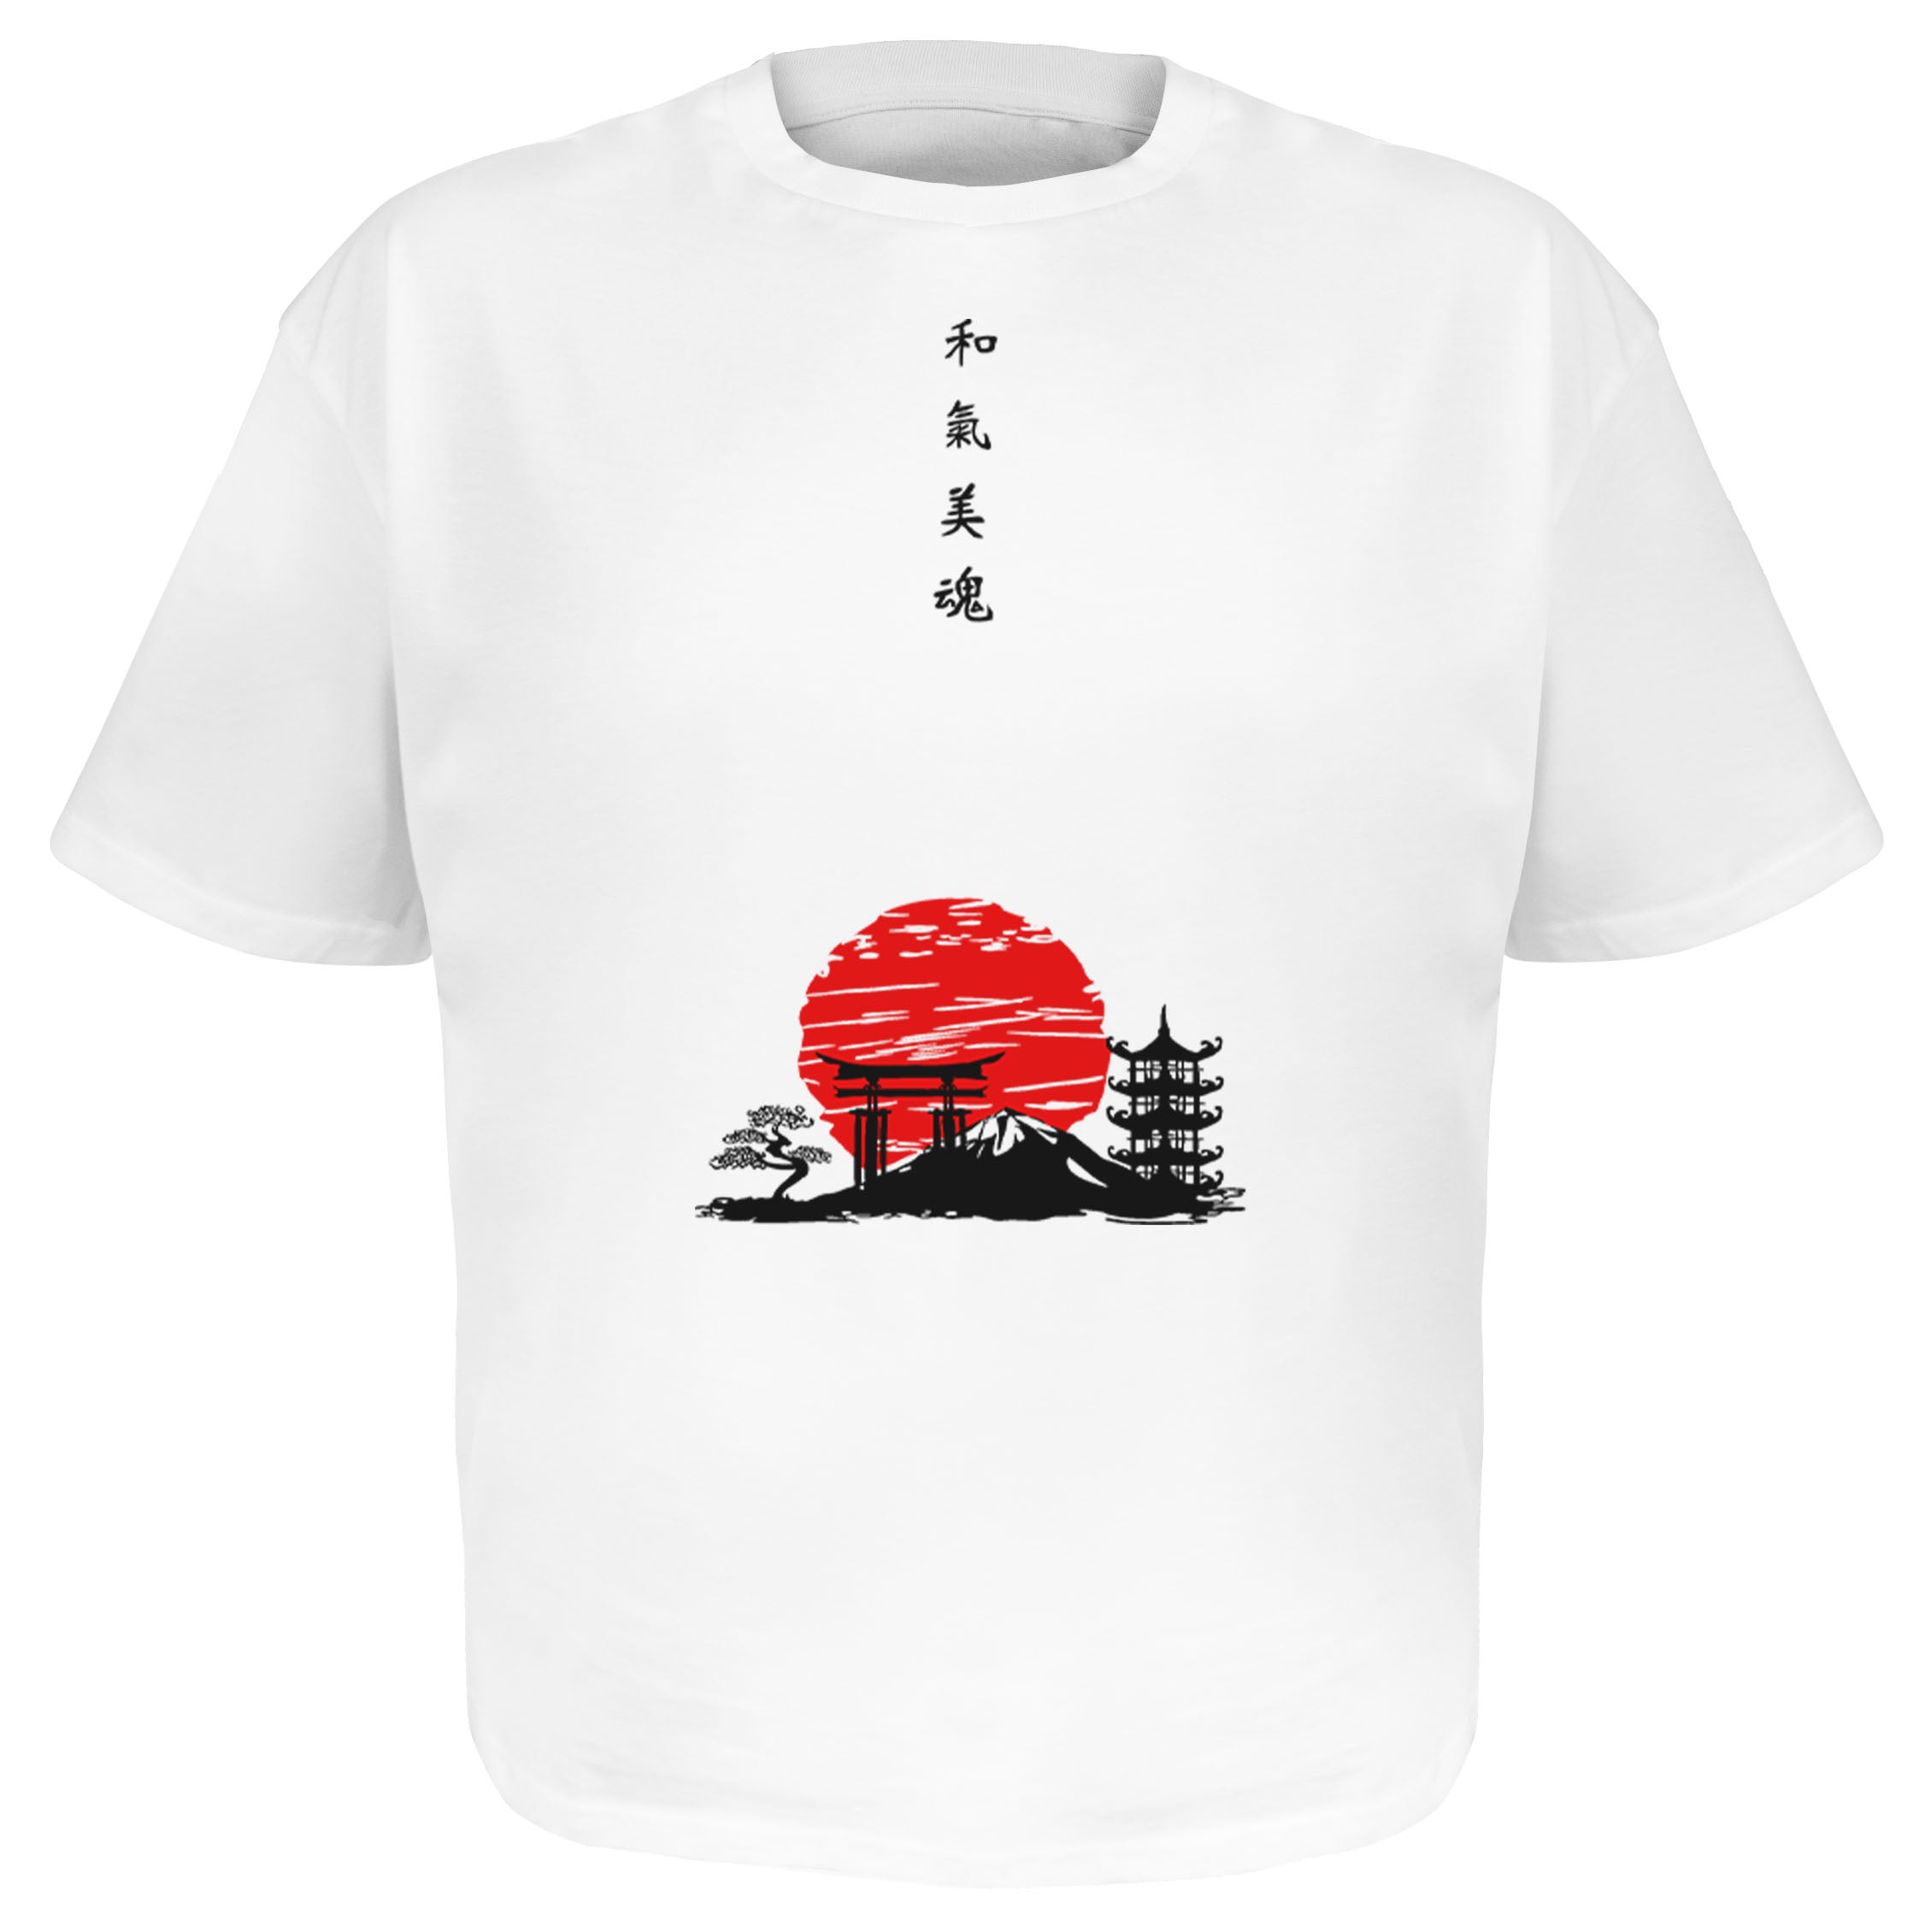 Japanese Symbols Frontprint - Heavy Oversize Shirt